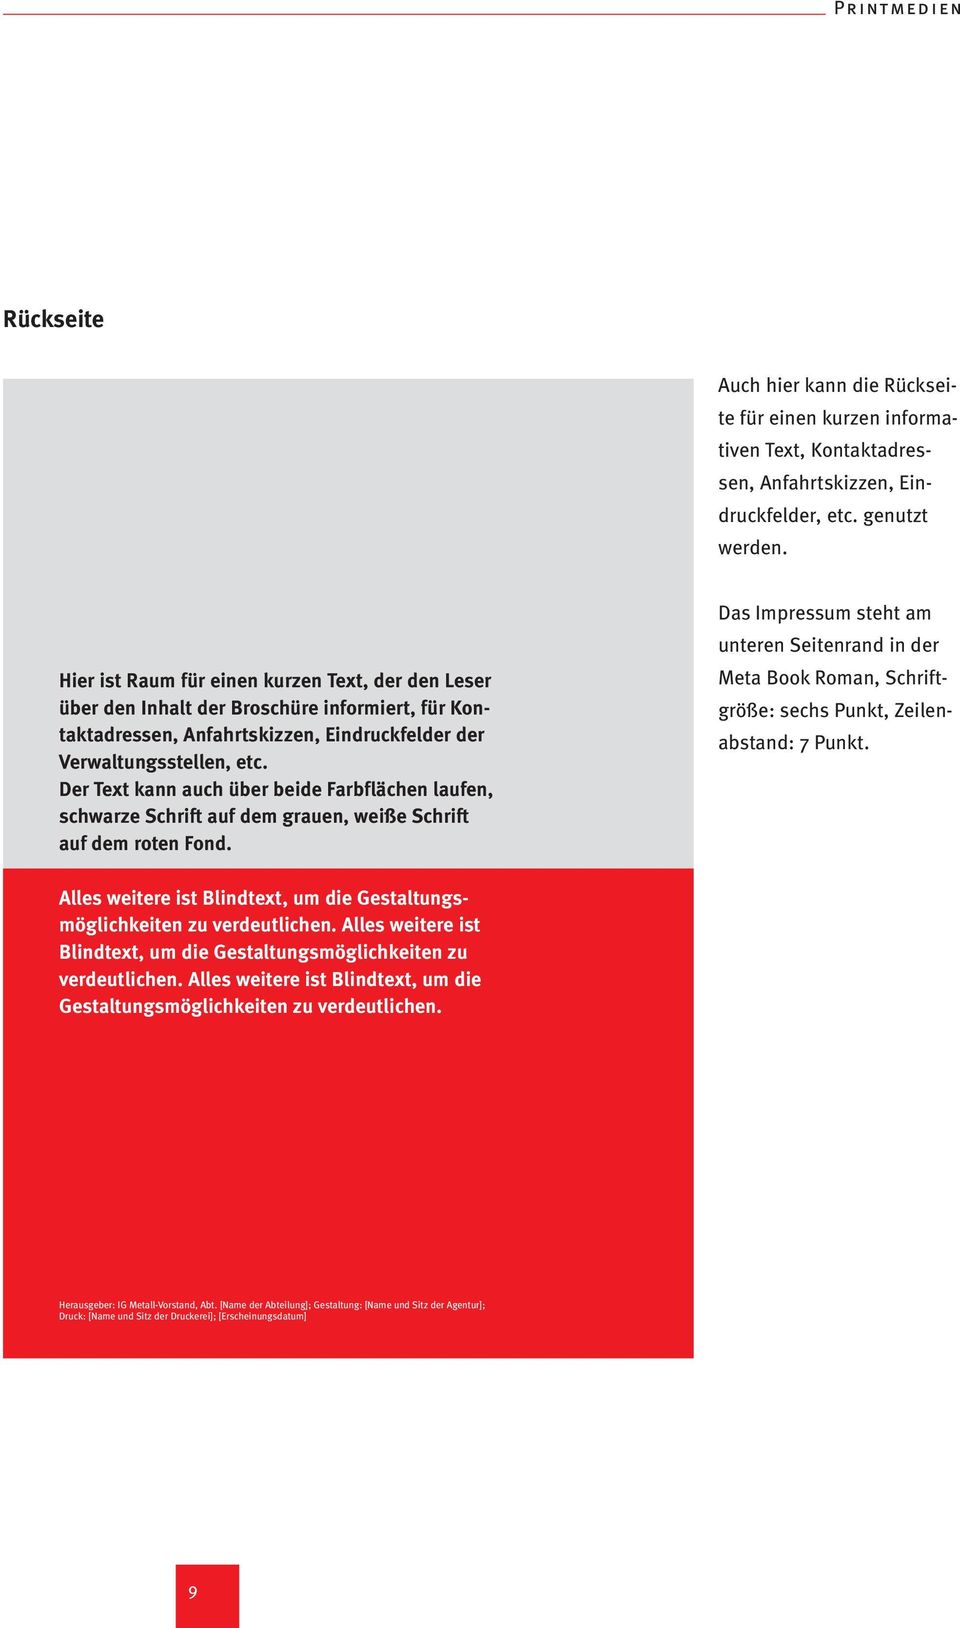 Der Text kann auch über beide Farbflächen laufen, schwarze Schrift auf dem grauen, weiße Schrift auf dem roten Fond.